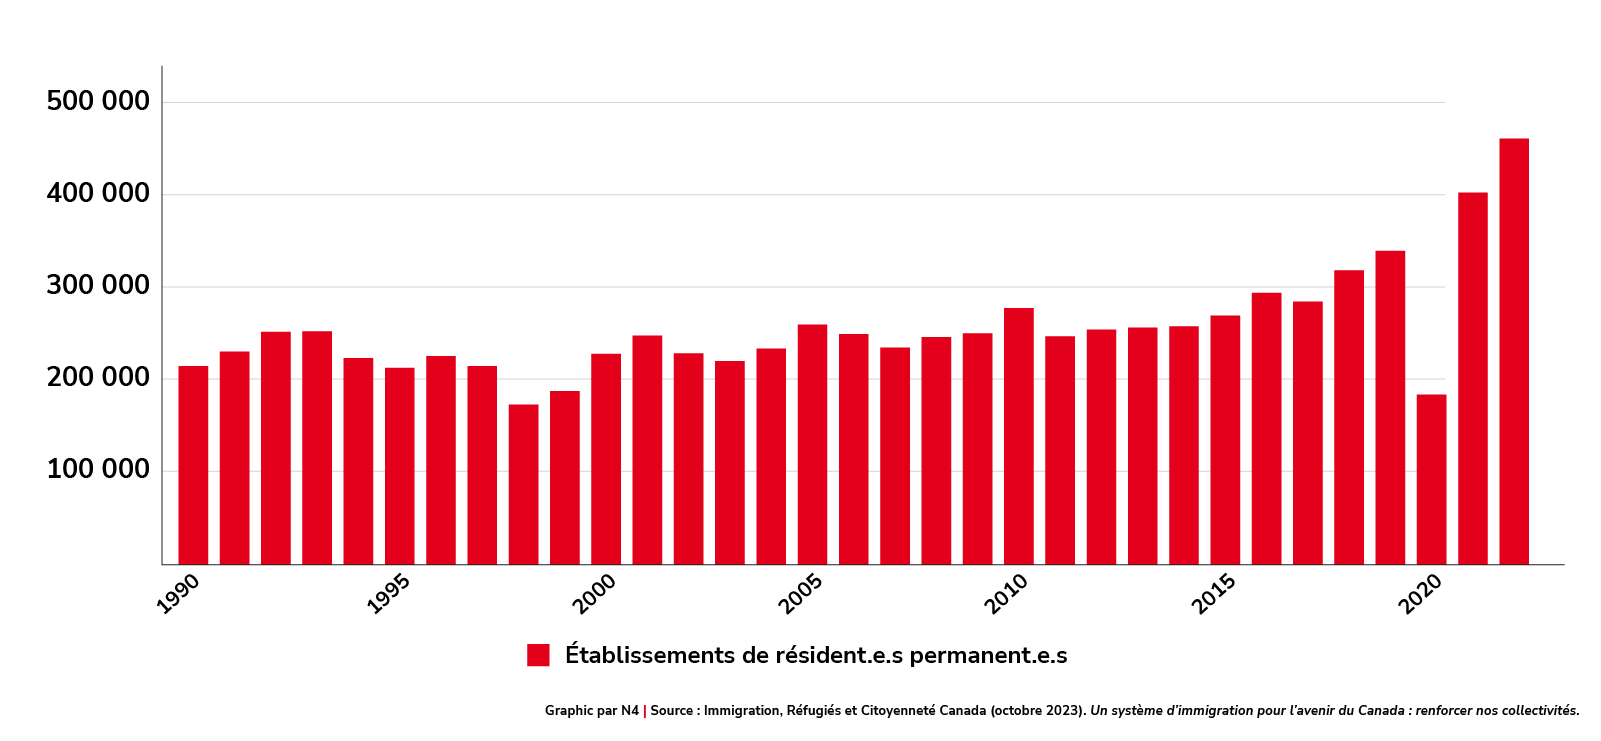 Établissements de résident.e.s permanent.e.s entre 1990 et 2023